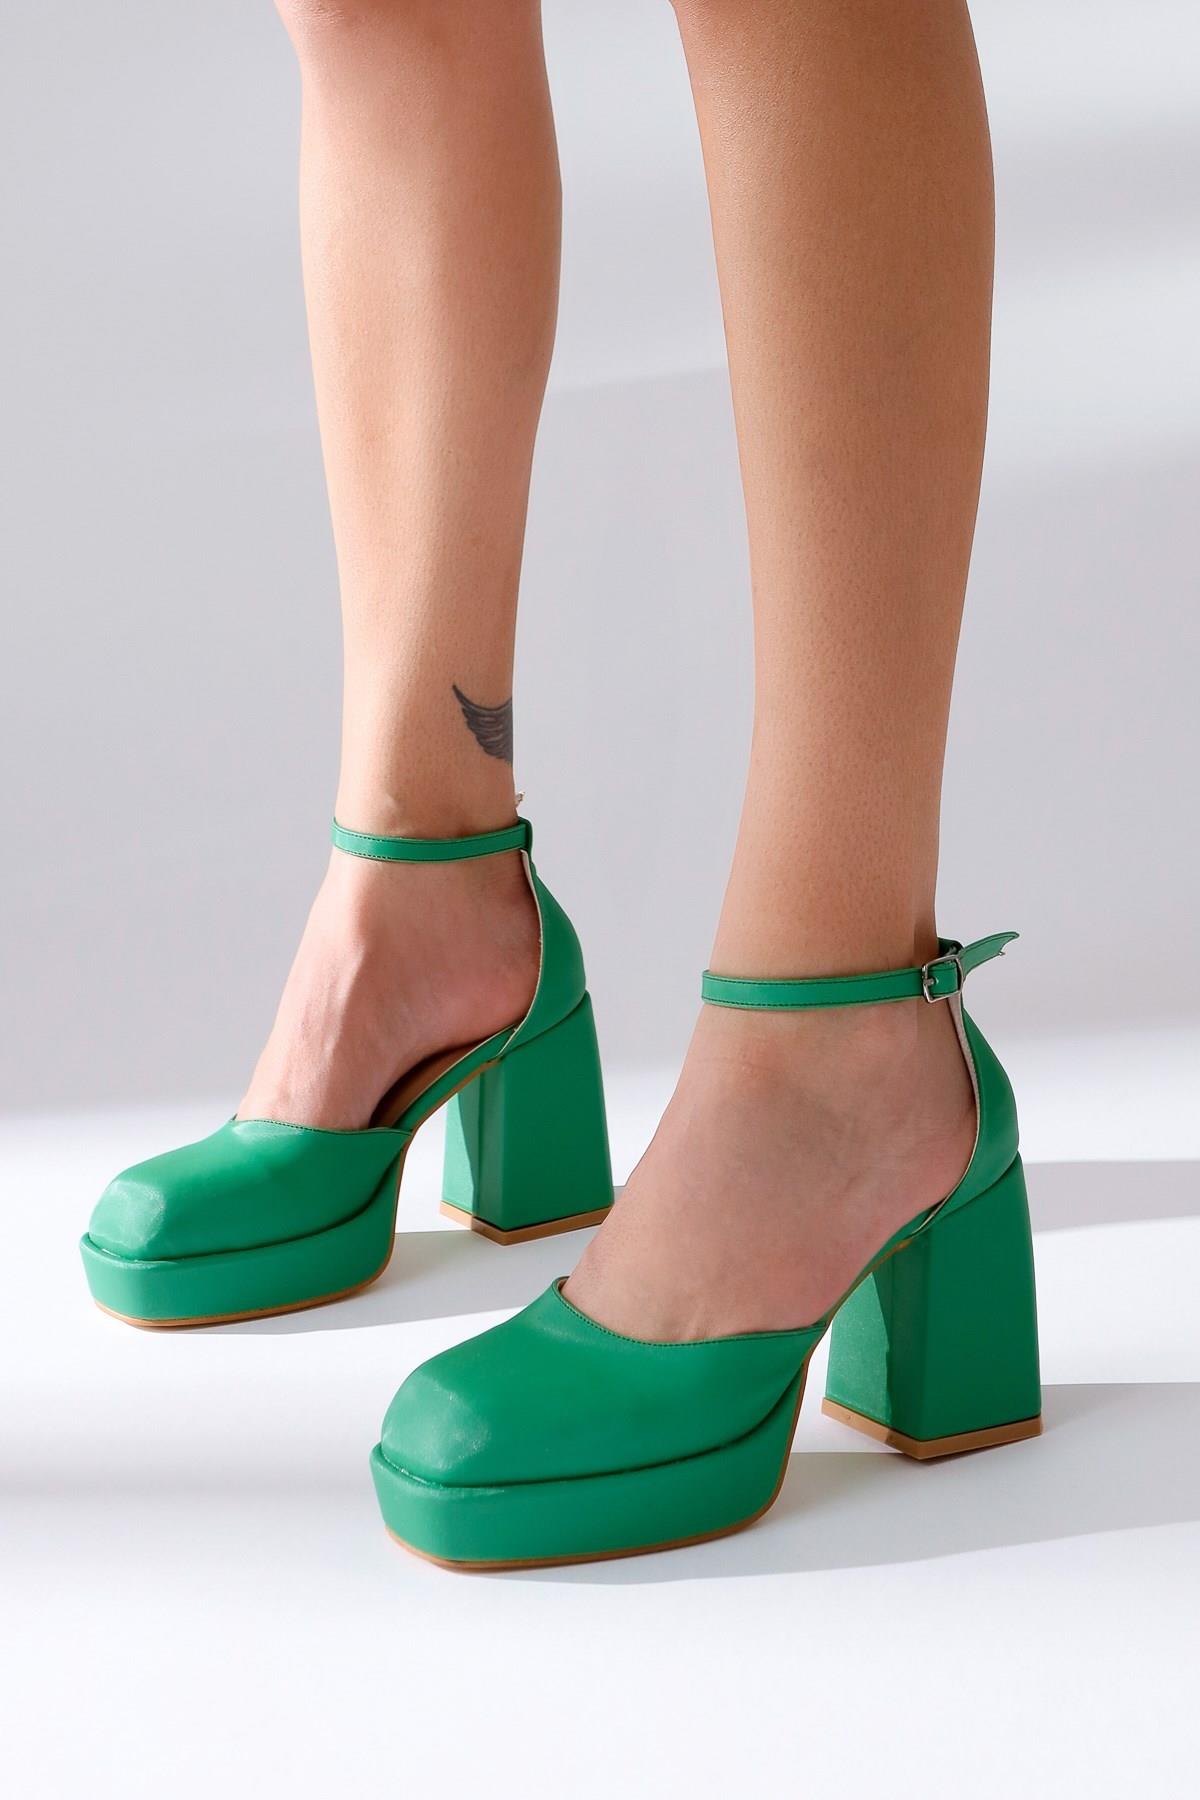 Yeşil Saten Platformlu Yüksek Kalın Topuklu Kadın Ayakkabı